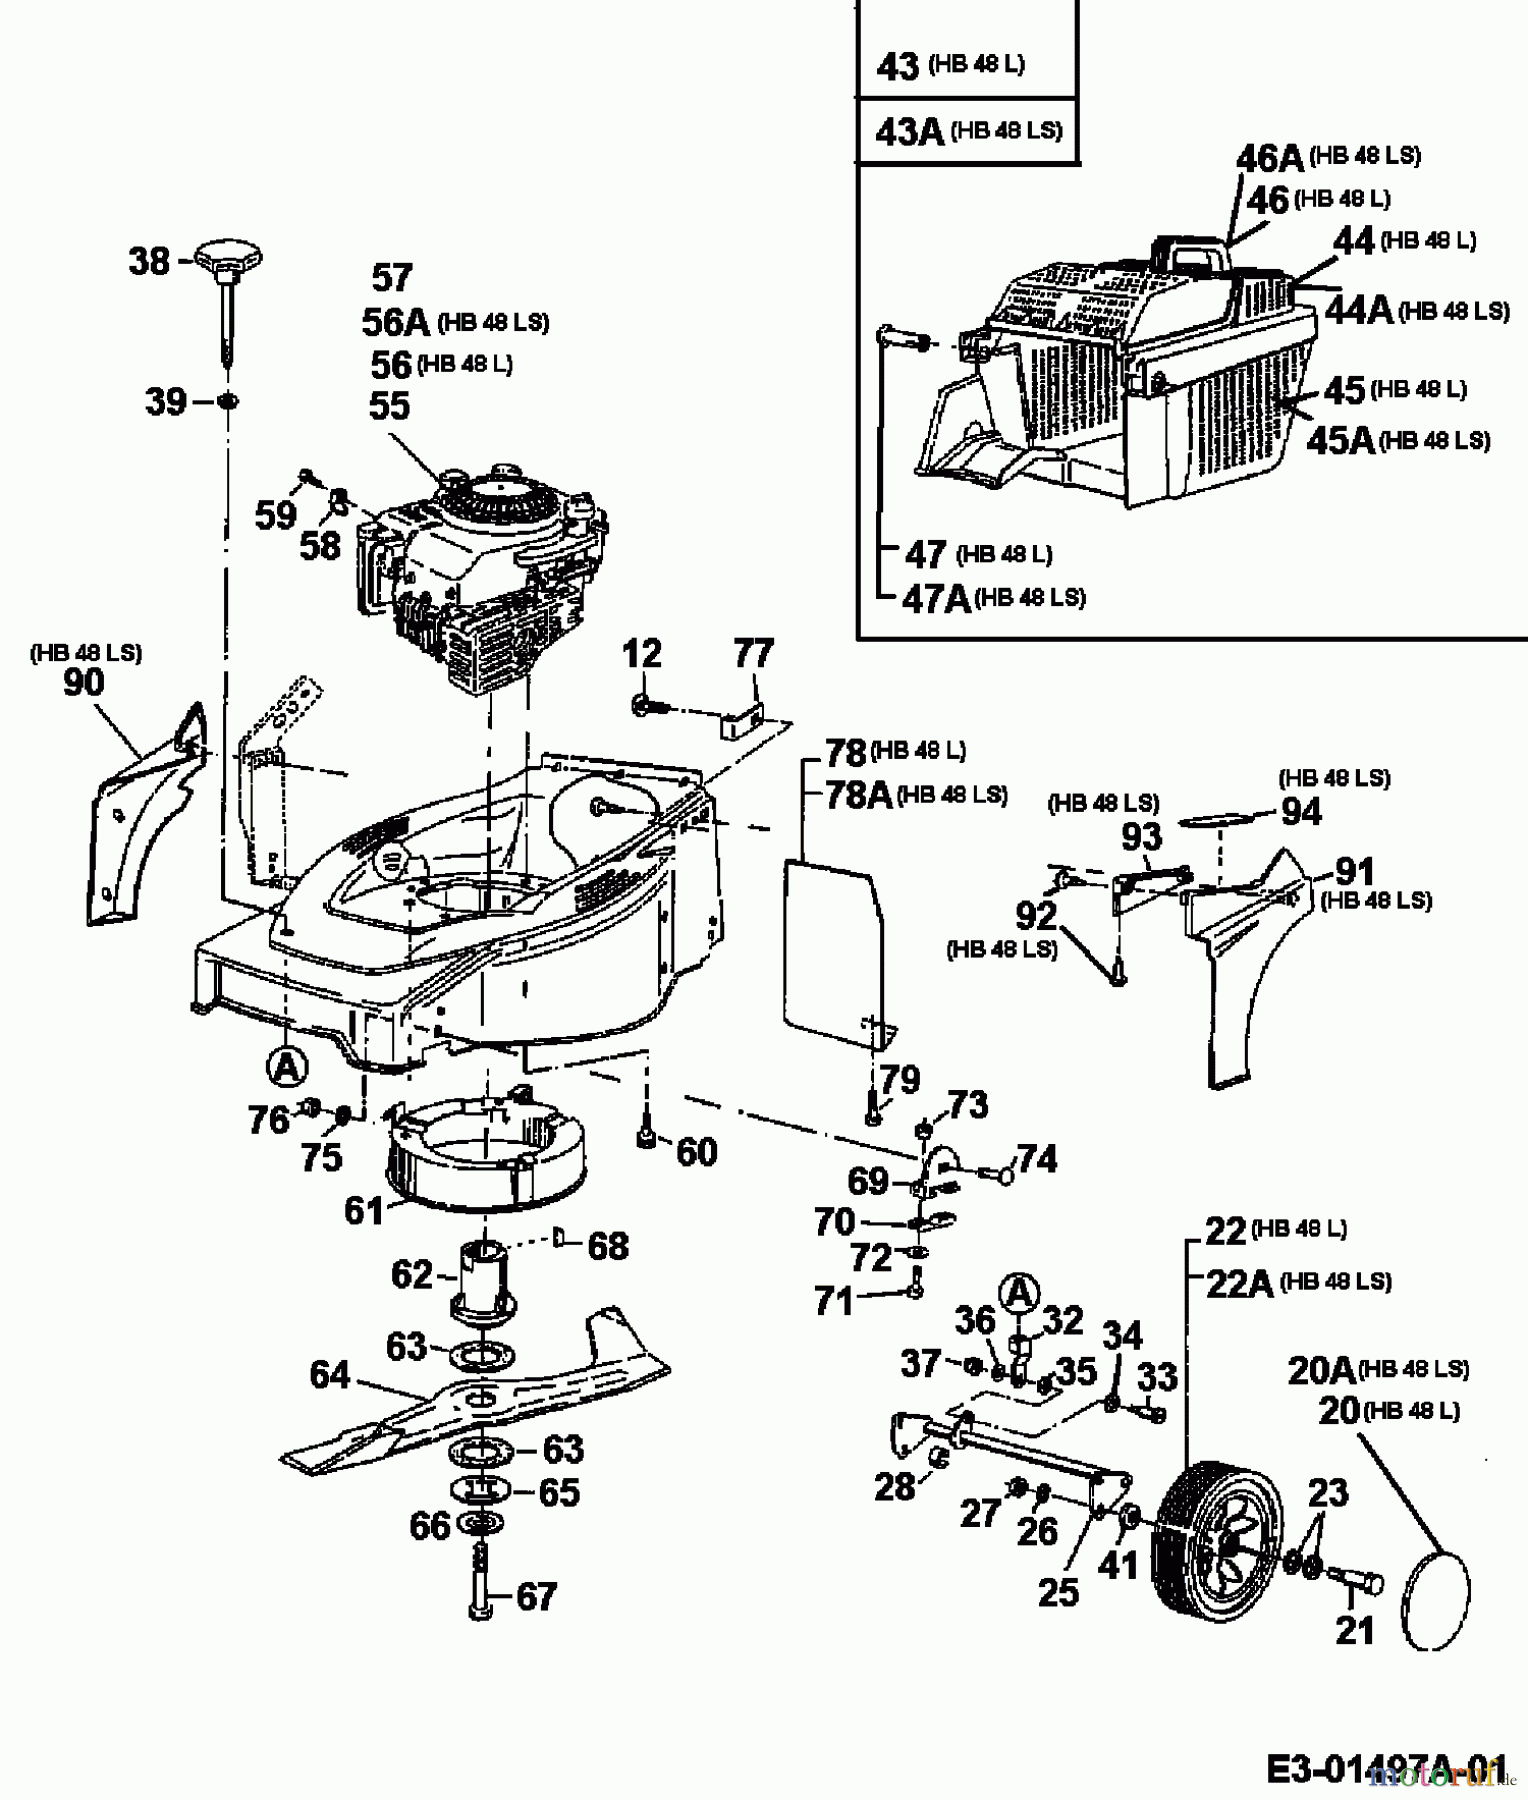  Gutbrod Motormäher HB 48 L 11C-T58V604  (2000) Grundgerät